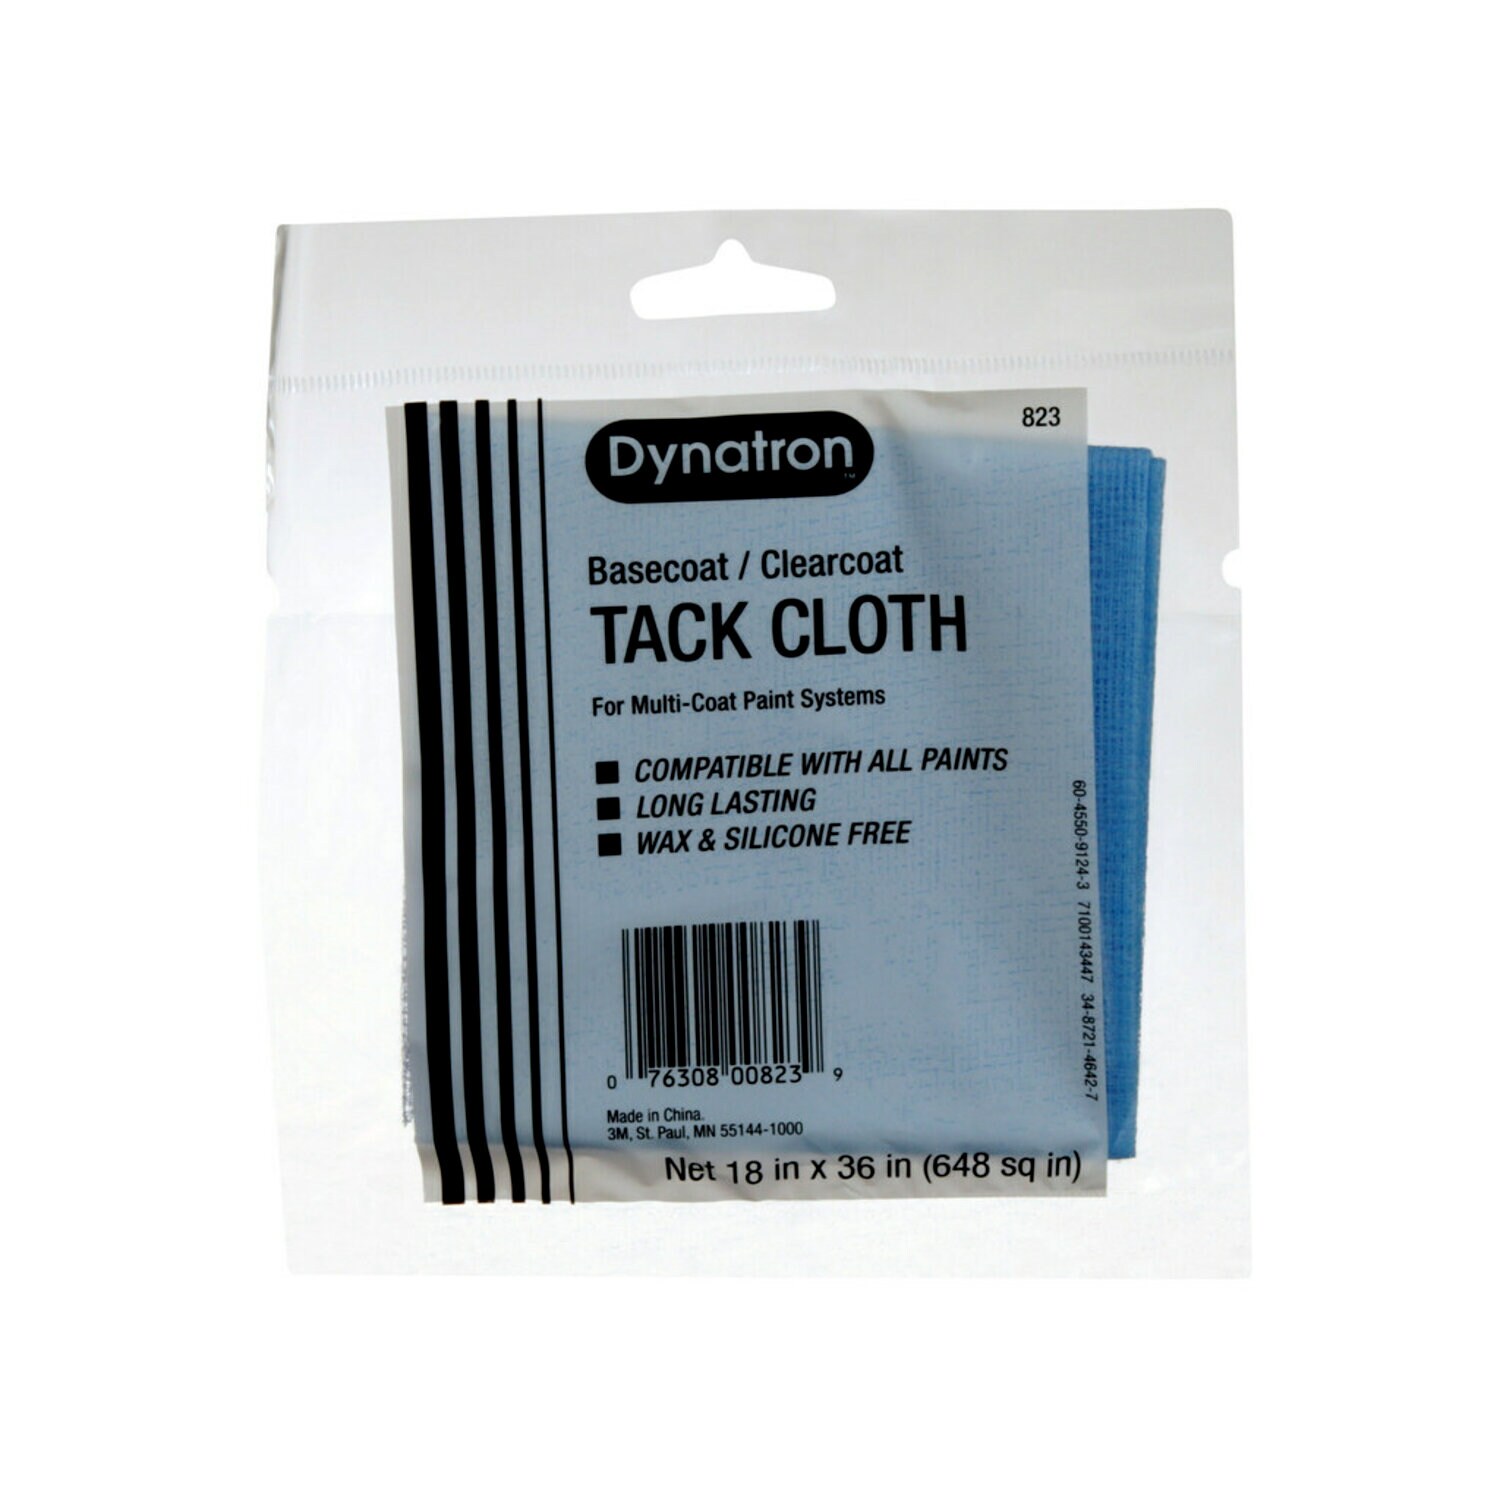 7100143447 - Dynatron Blue Tack Cloth, 00823, 12 tack cloths per carton, 12 cartons per case